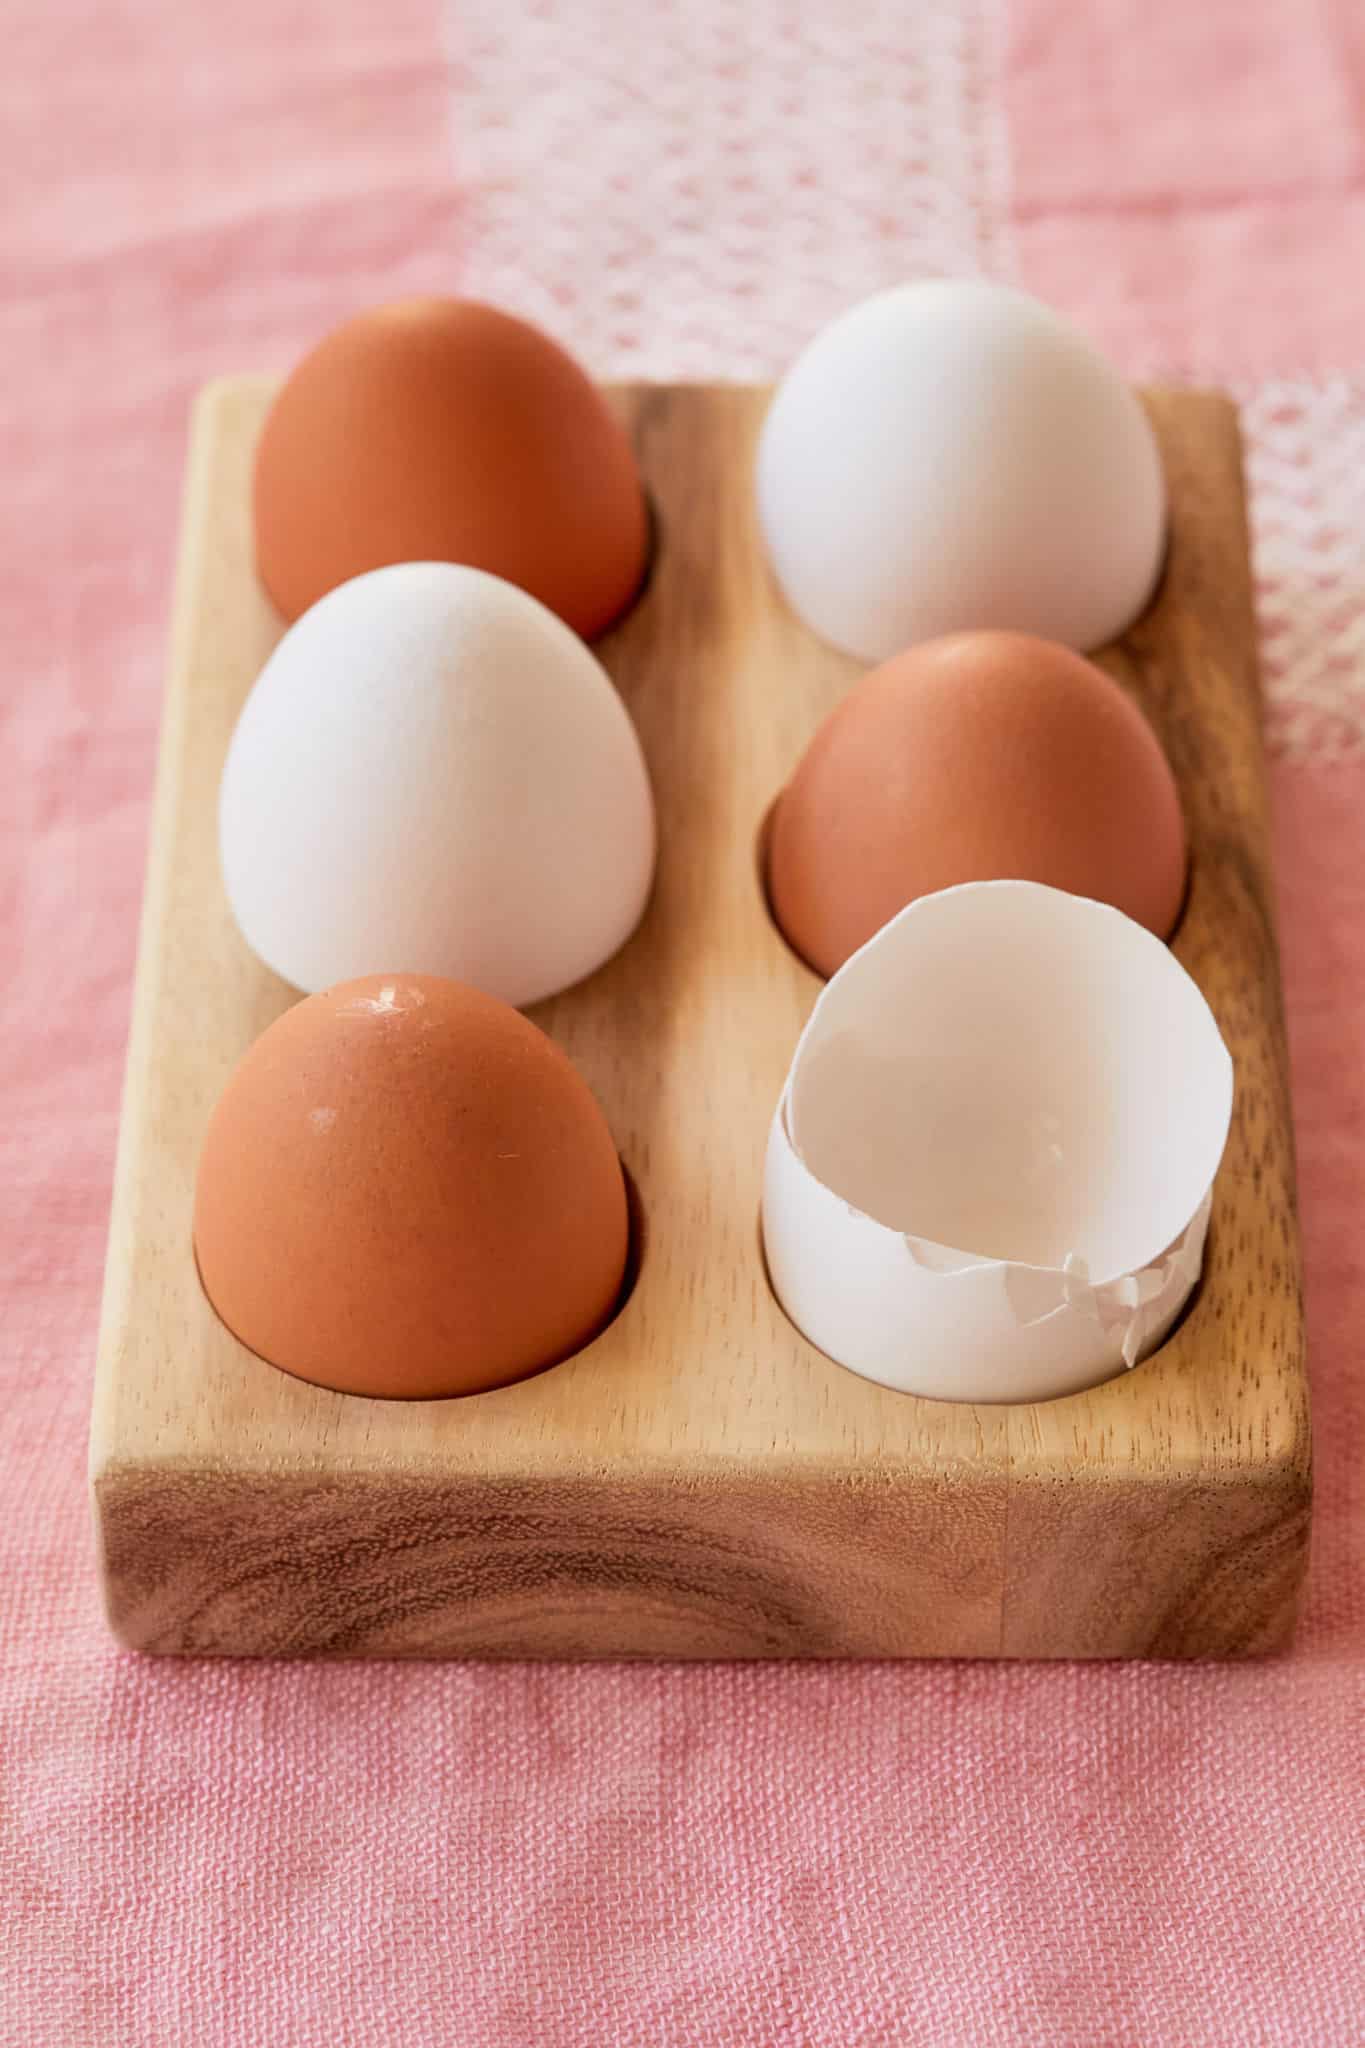 Egg holder with eggs.